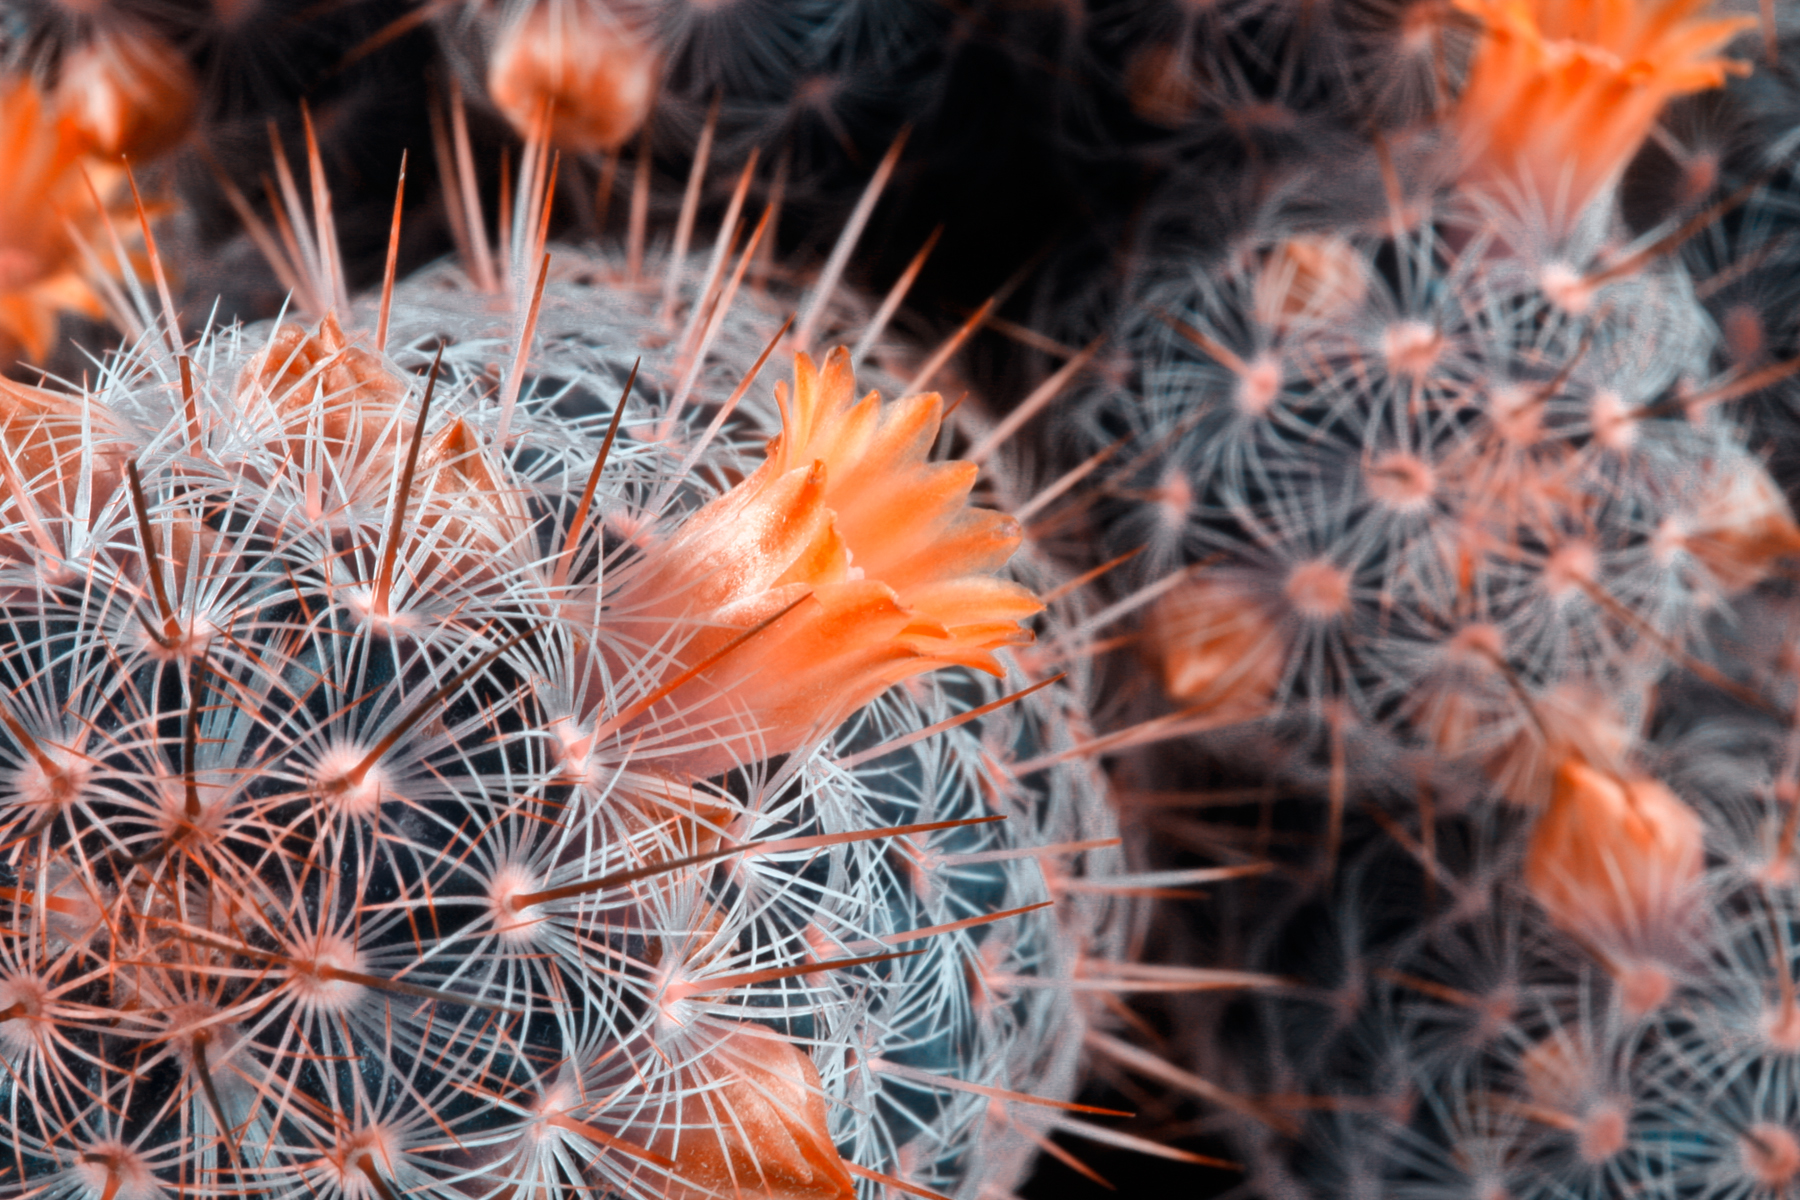 Cactus close-up photo